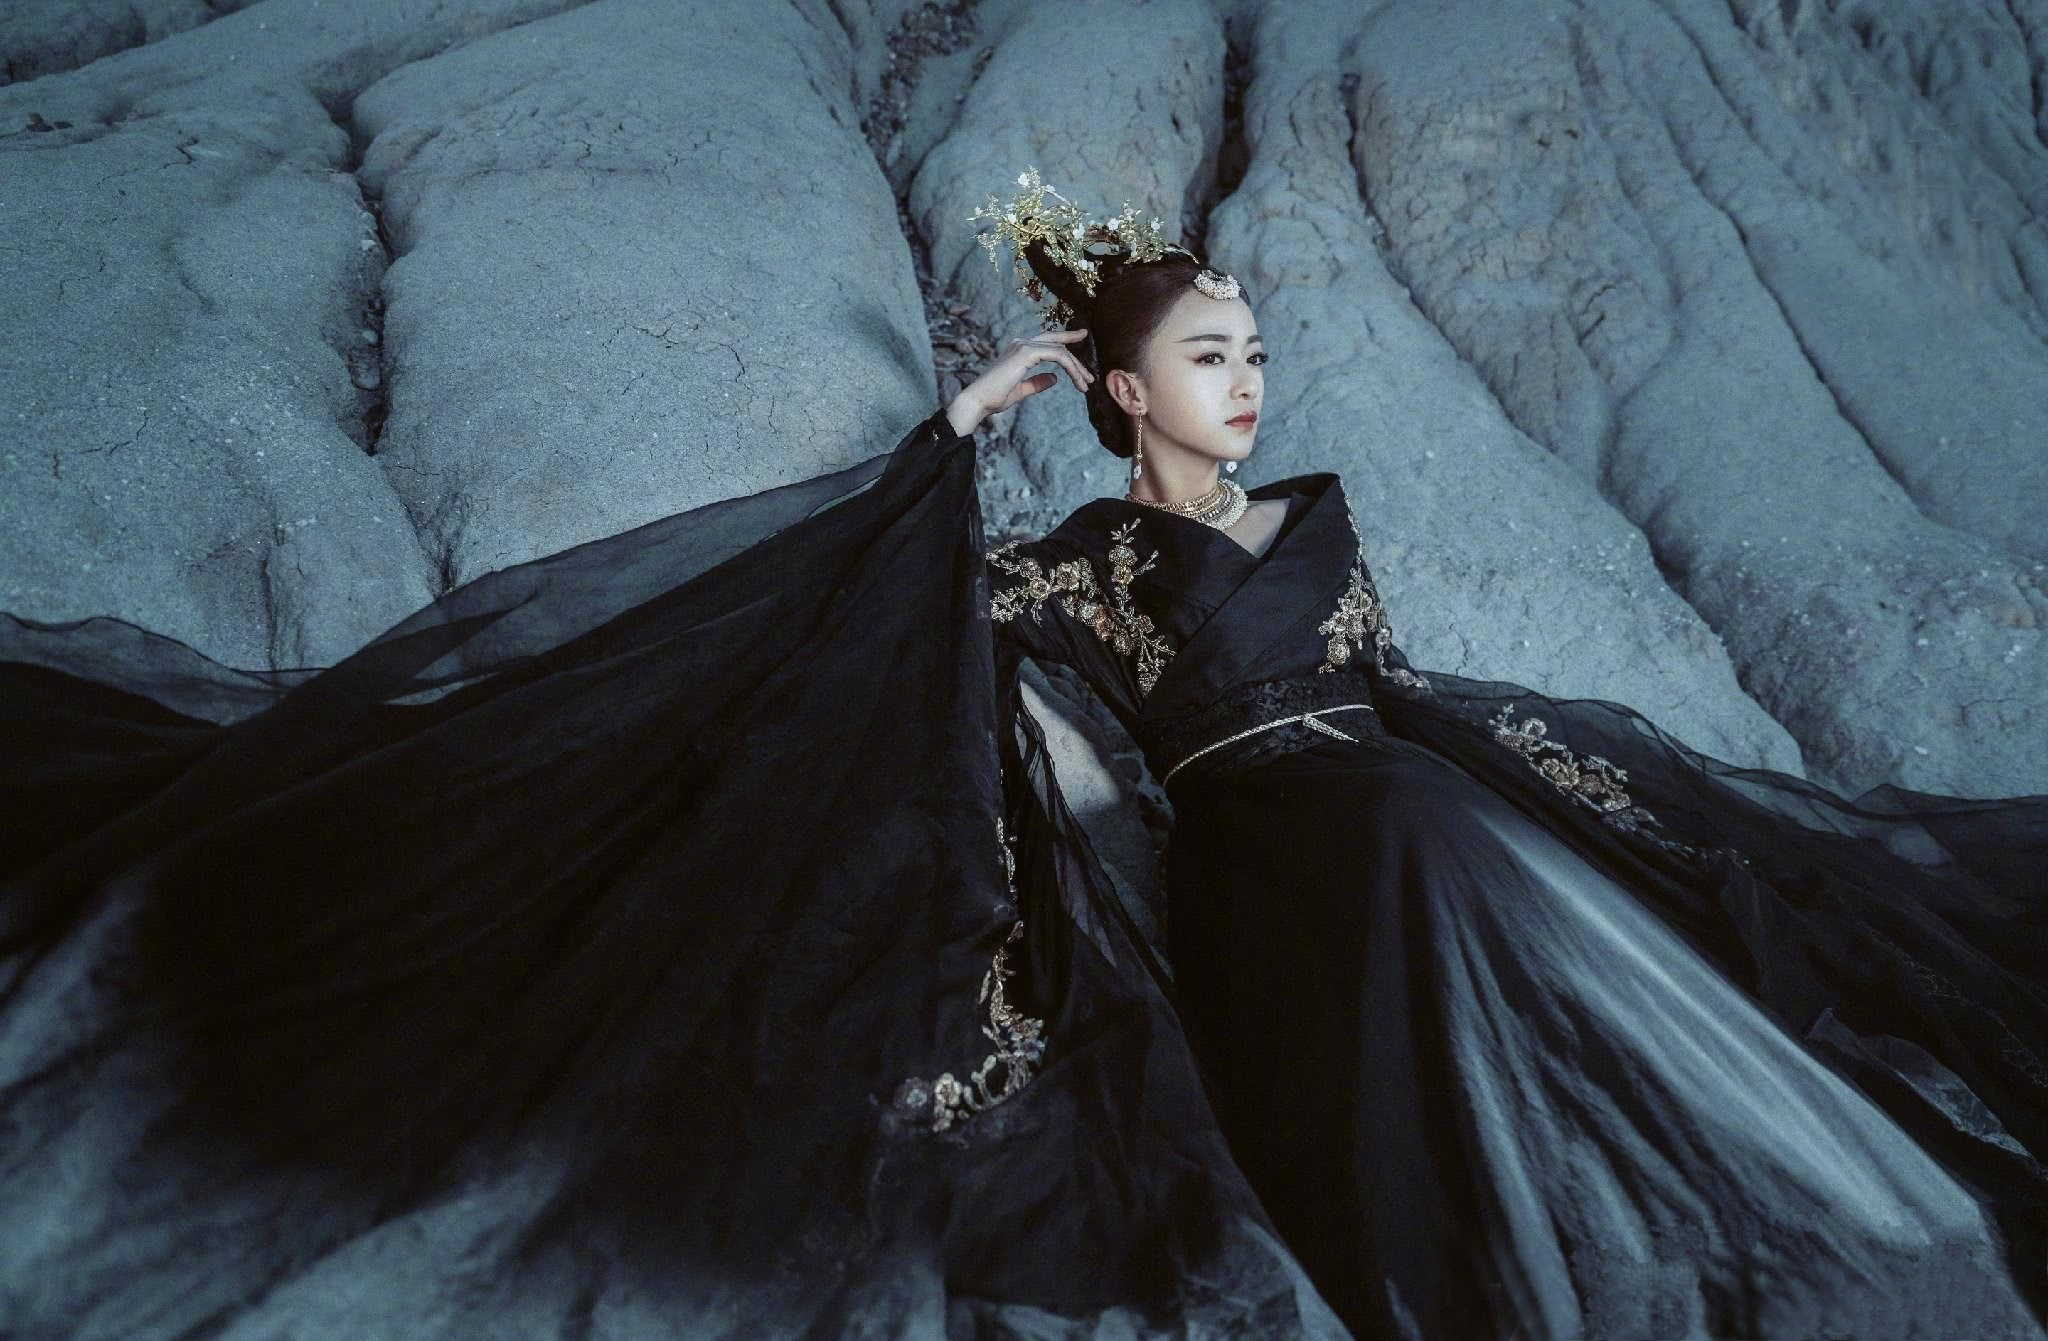 原创黑衣也能穿出仙气的古装美人,刘亦菲杨紫杨幂,你觉得谁最好看?